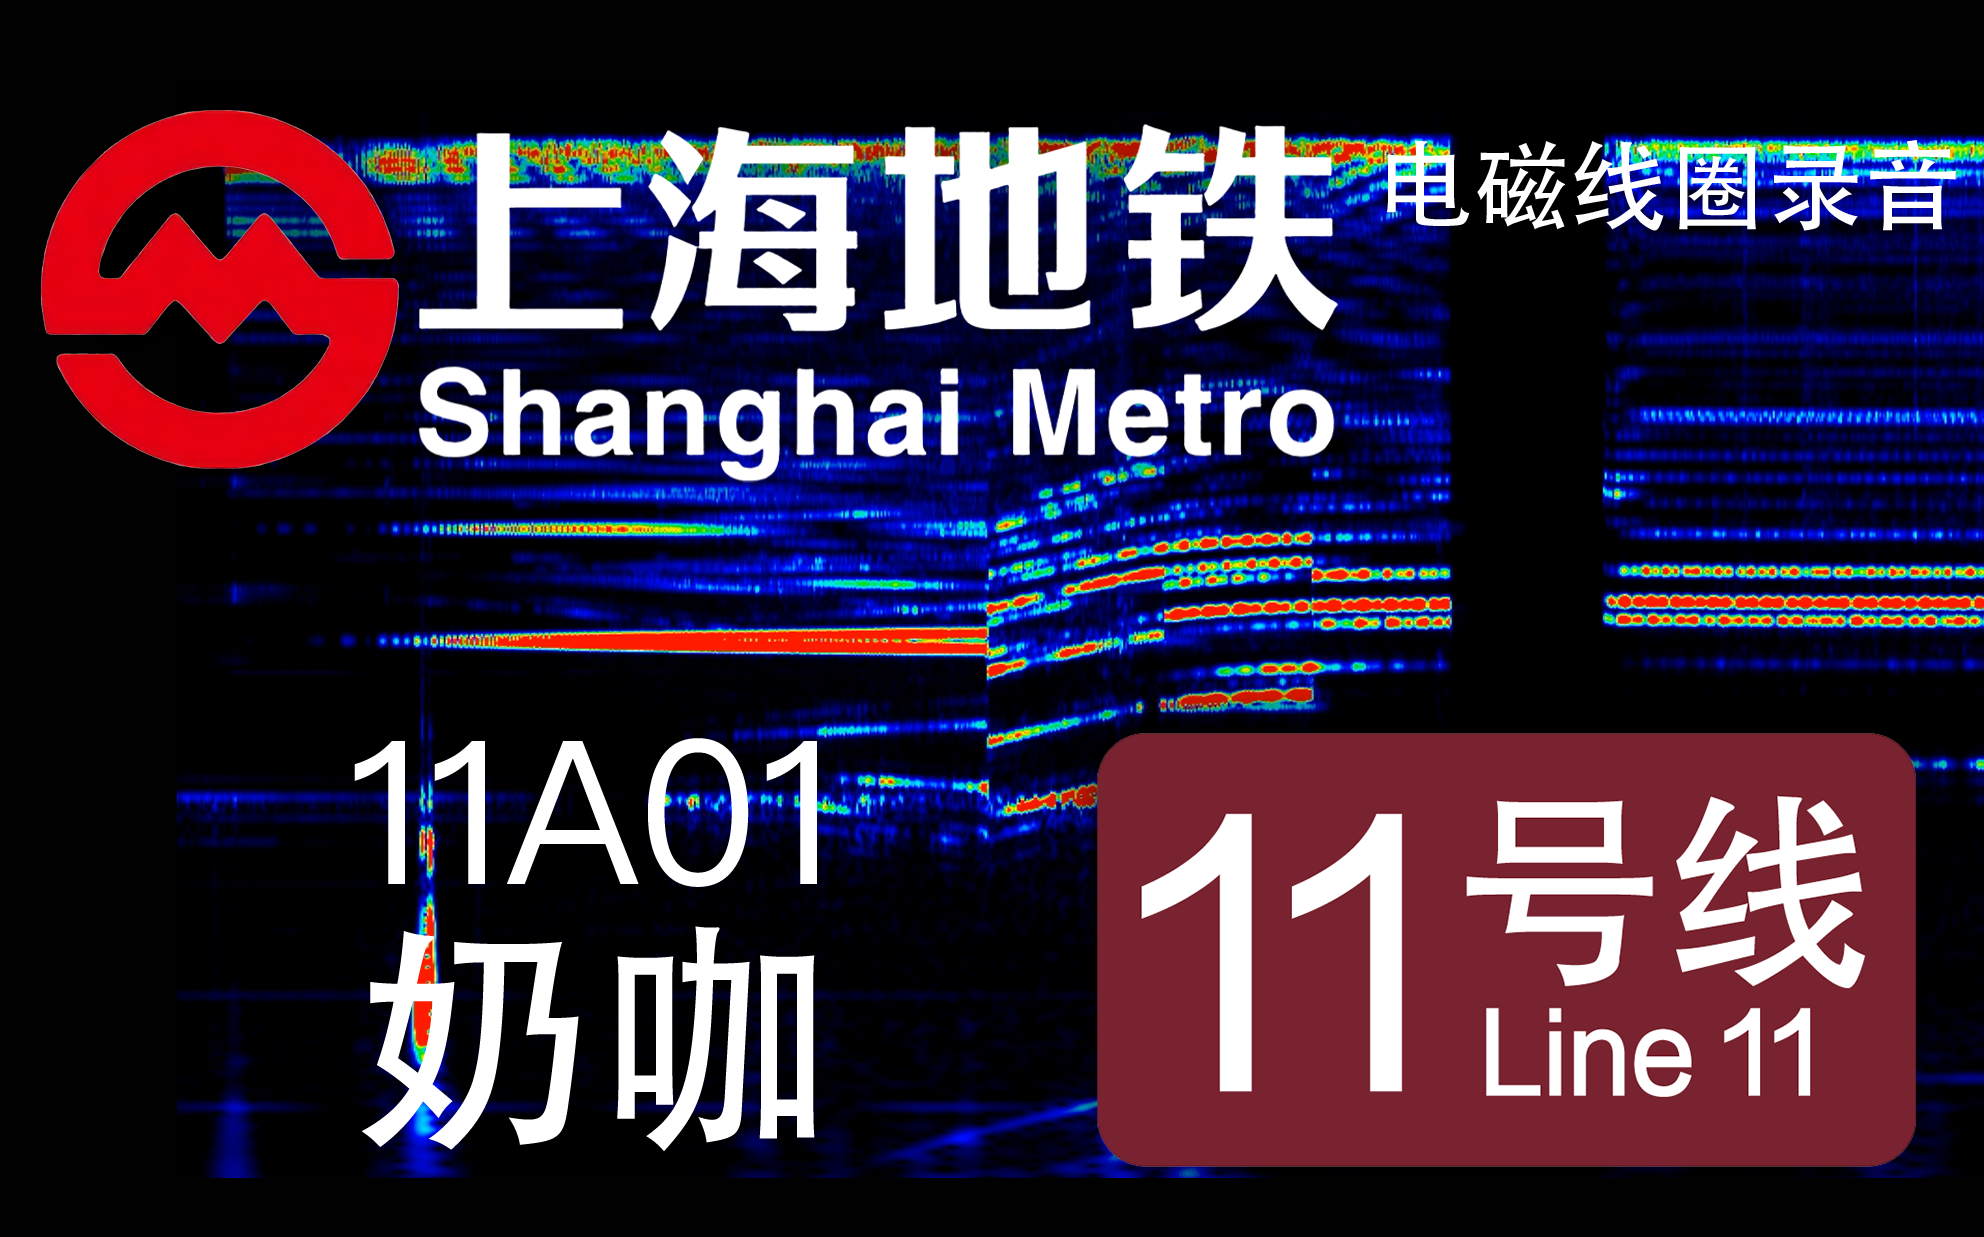 【上海地铁】11号线-11A01-奶咖 南车西门子IGBT-VVVF电磁录音